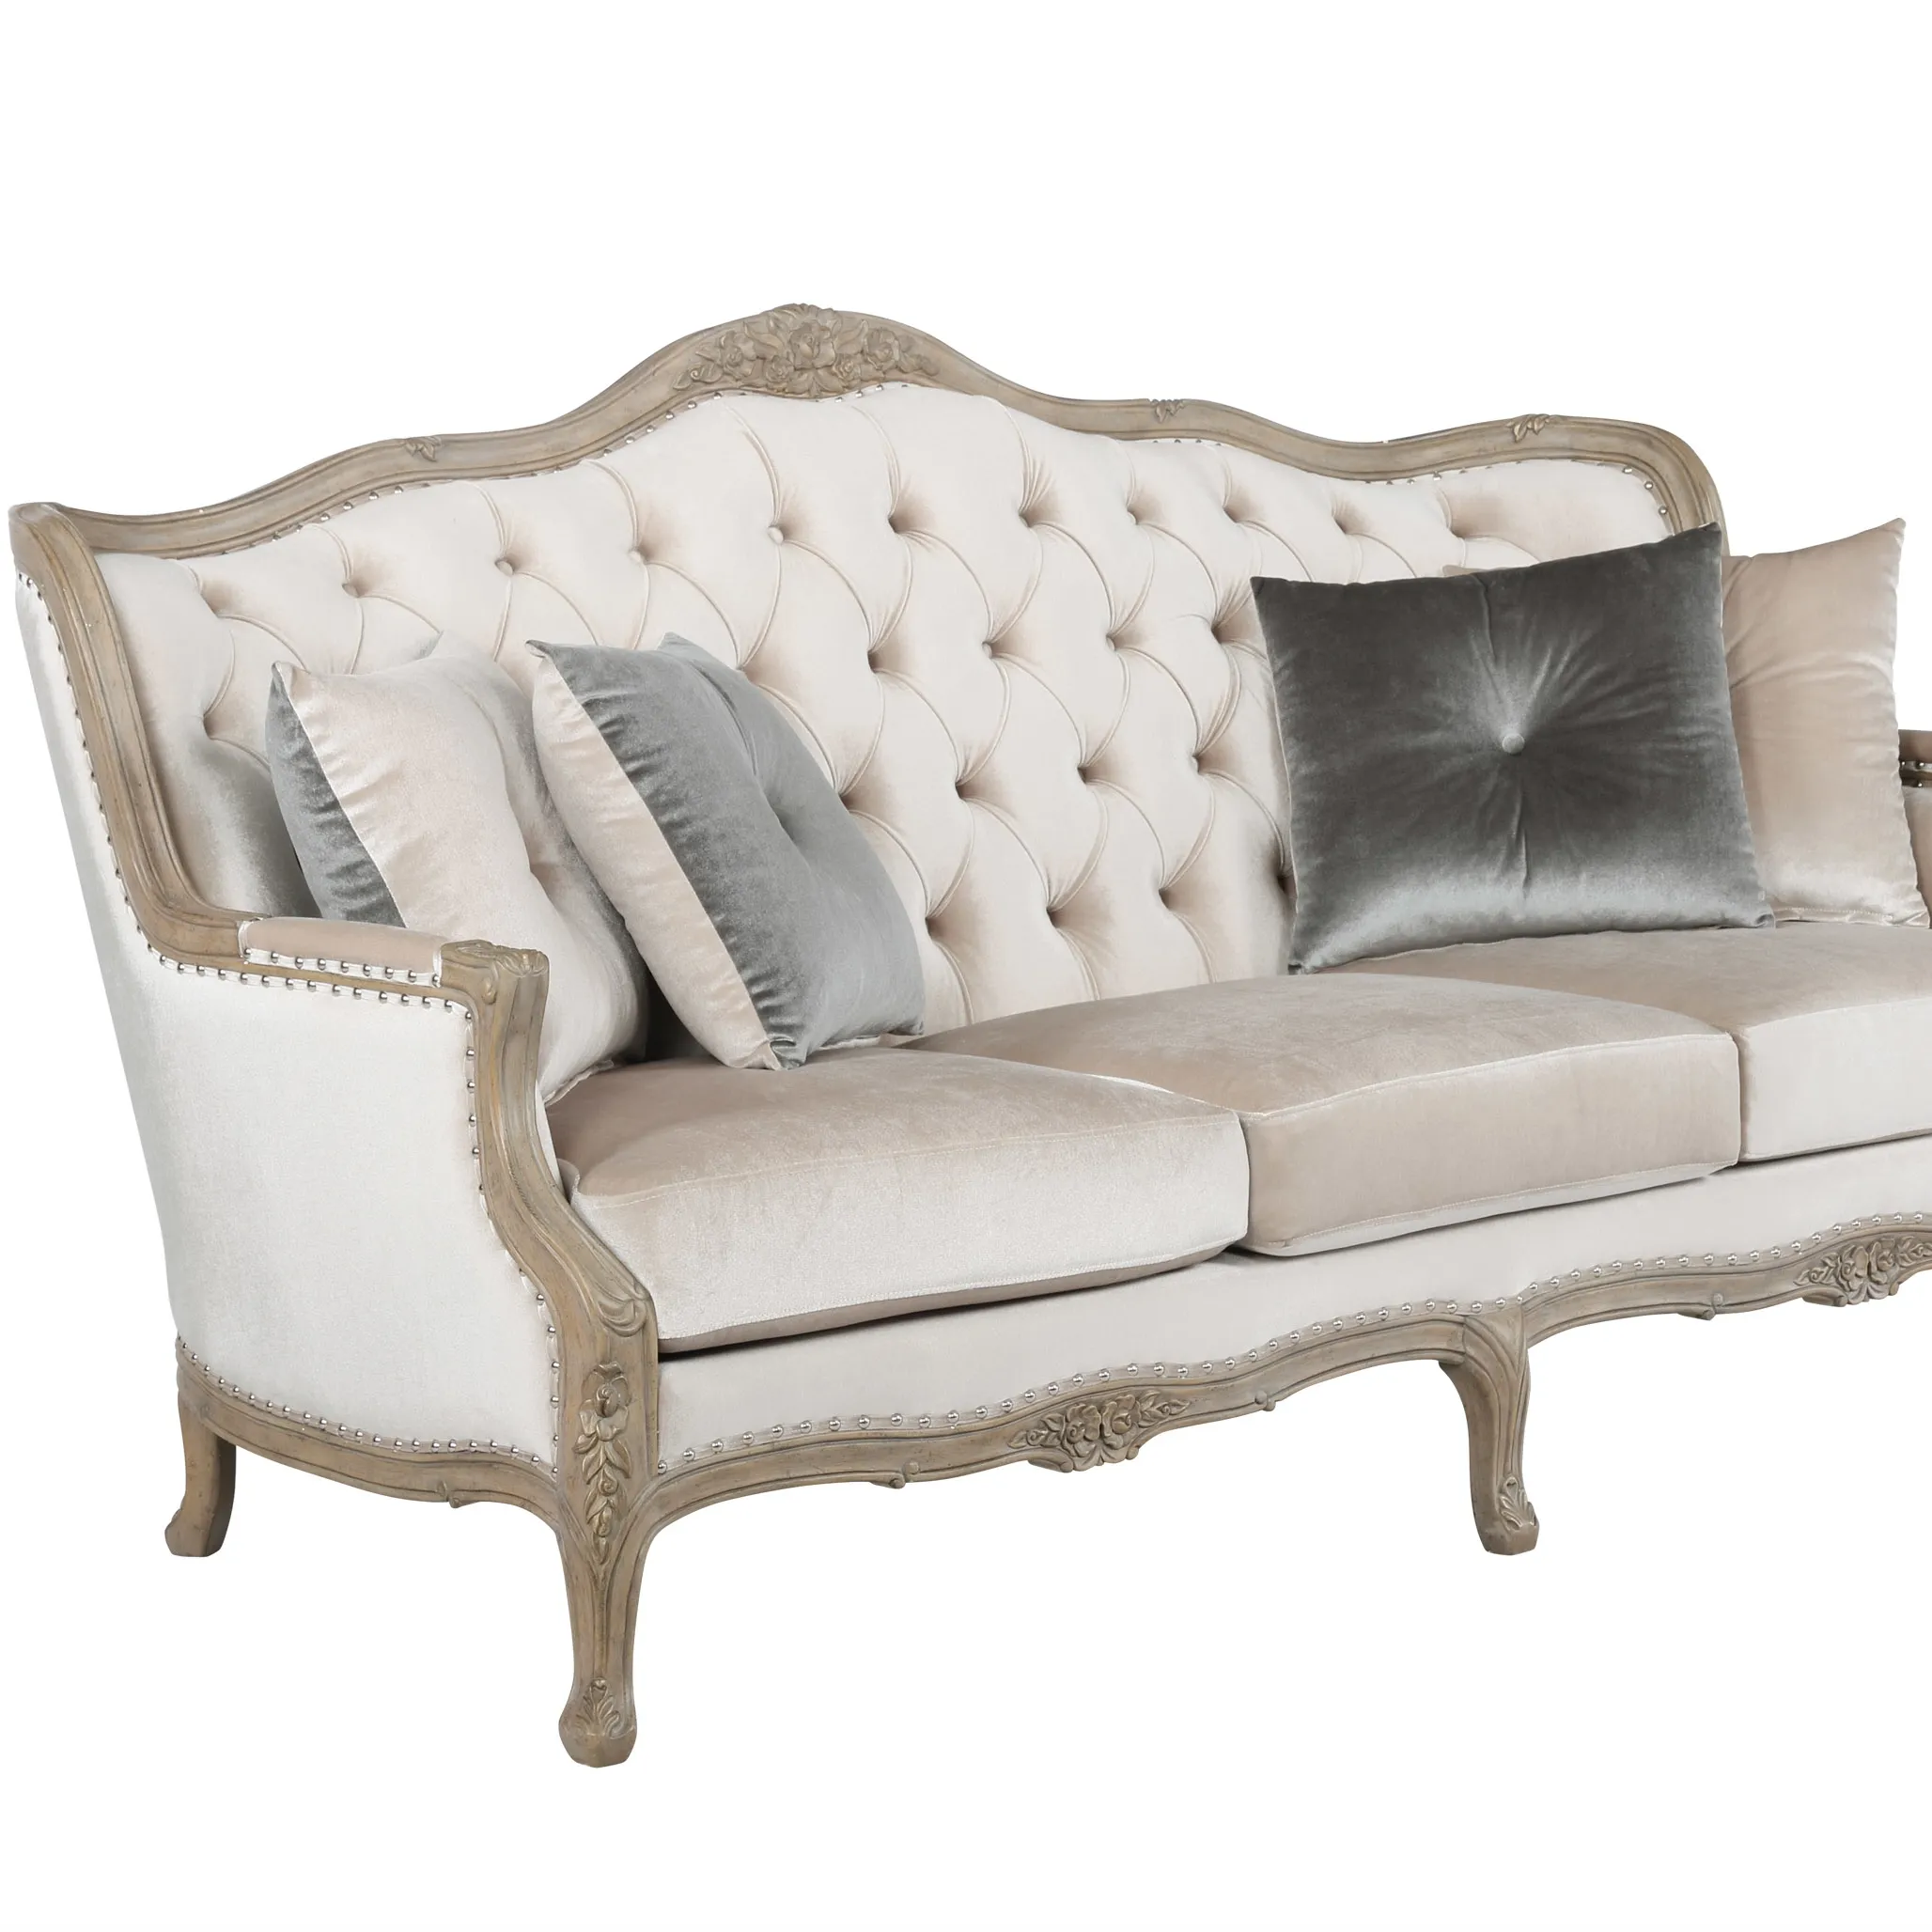 Canapé en bois massif sculpté, ensemble de trois canapés de luxe, Style européen, vintage, meubles en bois massif